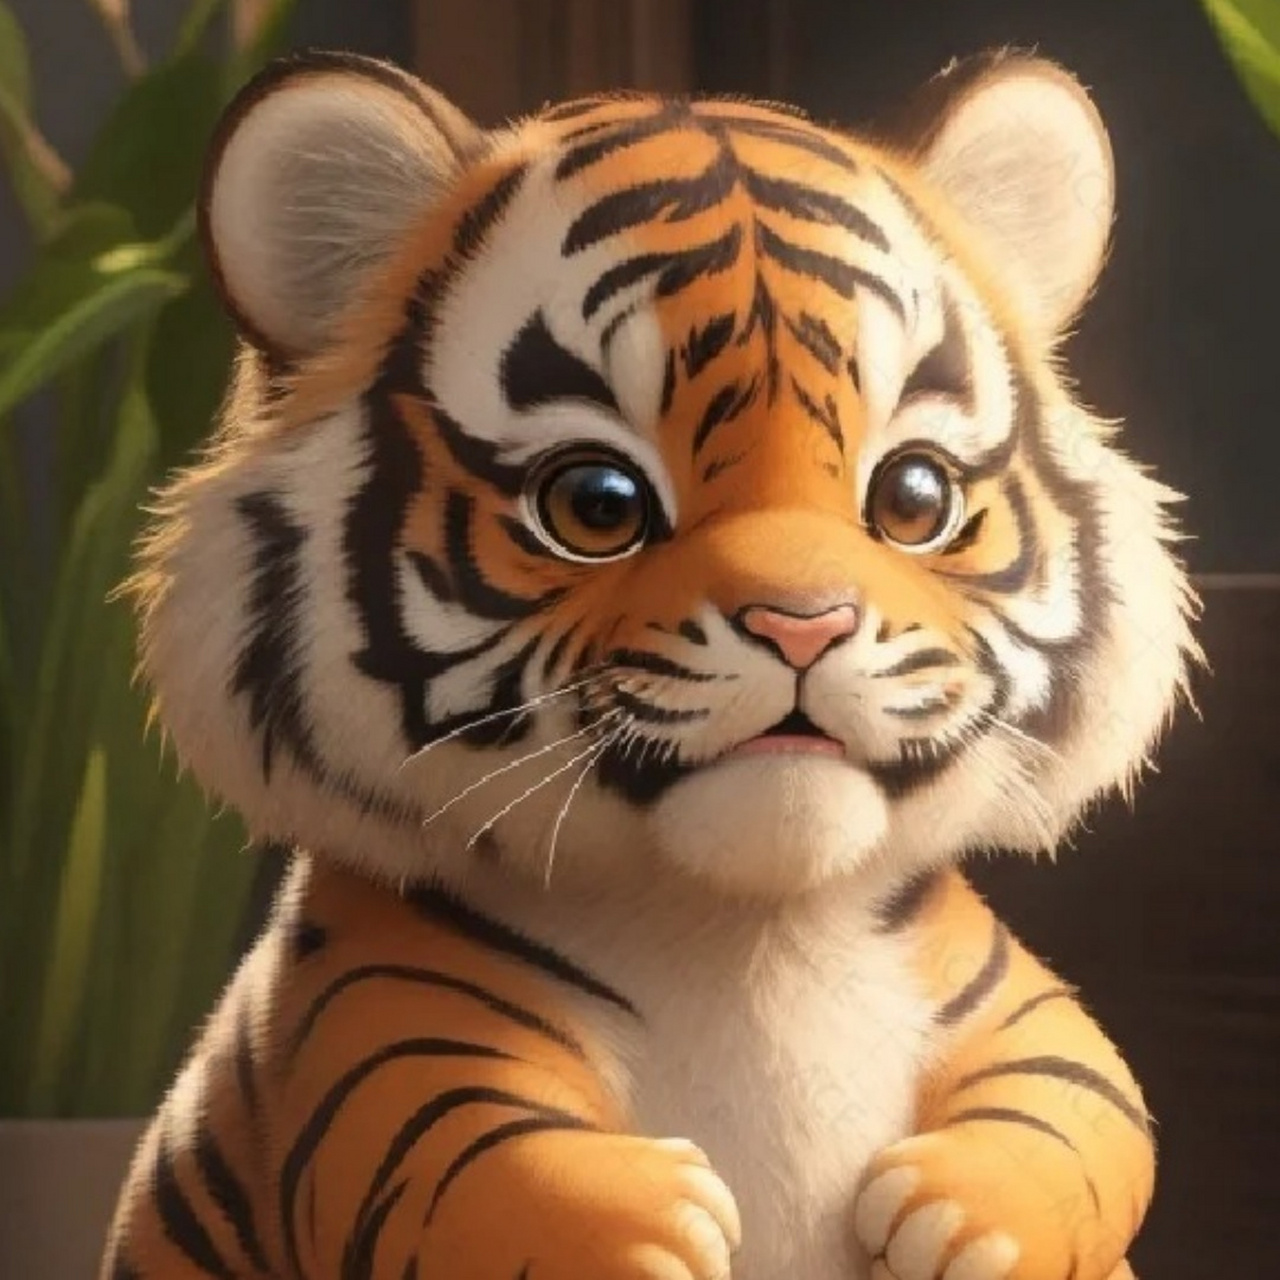 这不仅仅是一张老虎头像,更是力量与勇气的象征